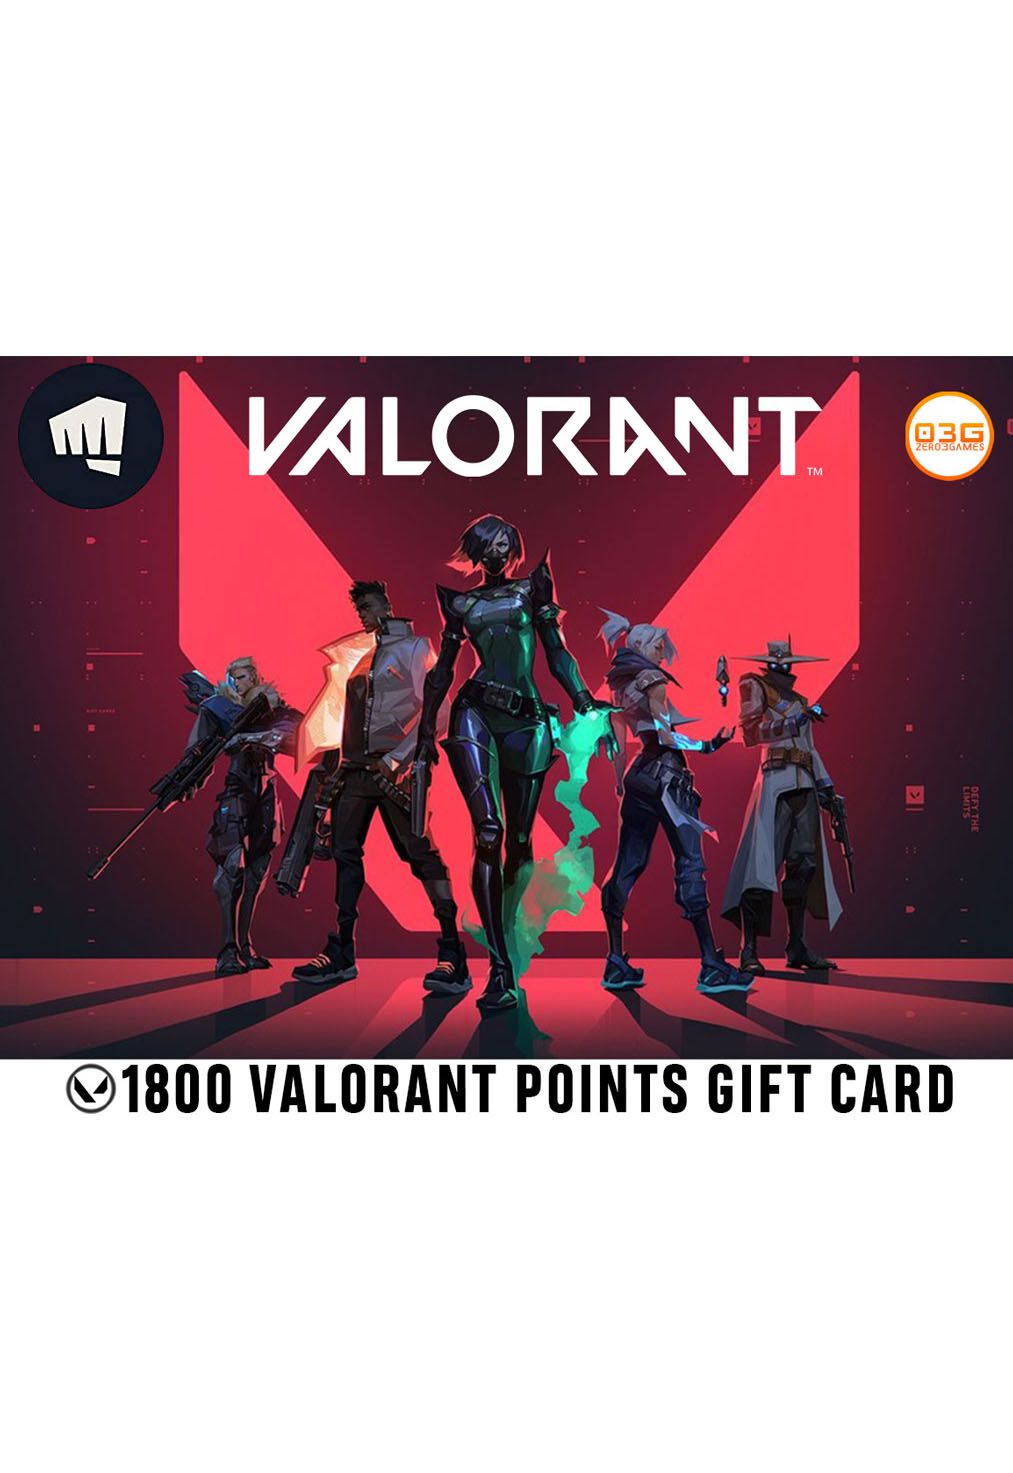 Comprar Cartao Valorant R 50 1800 Valorant Points Gift Card - cartão de robux